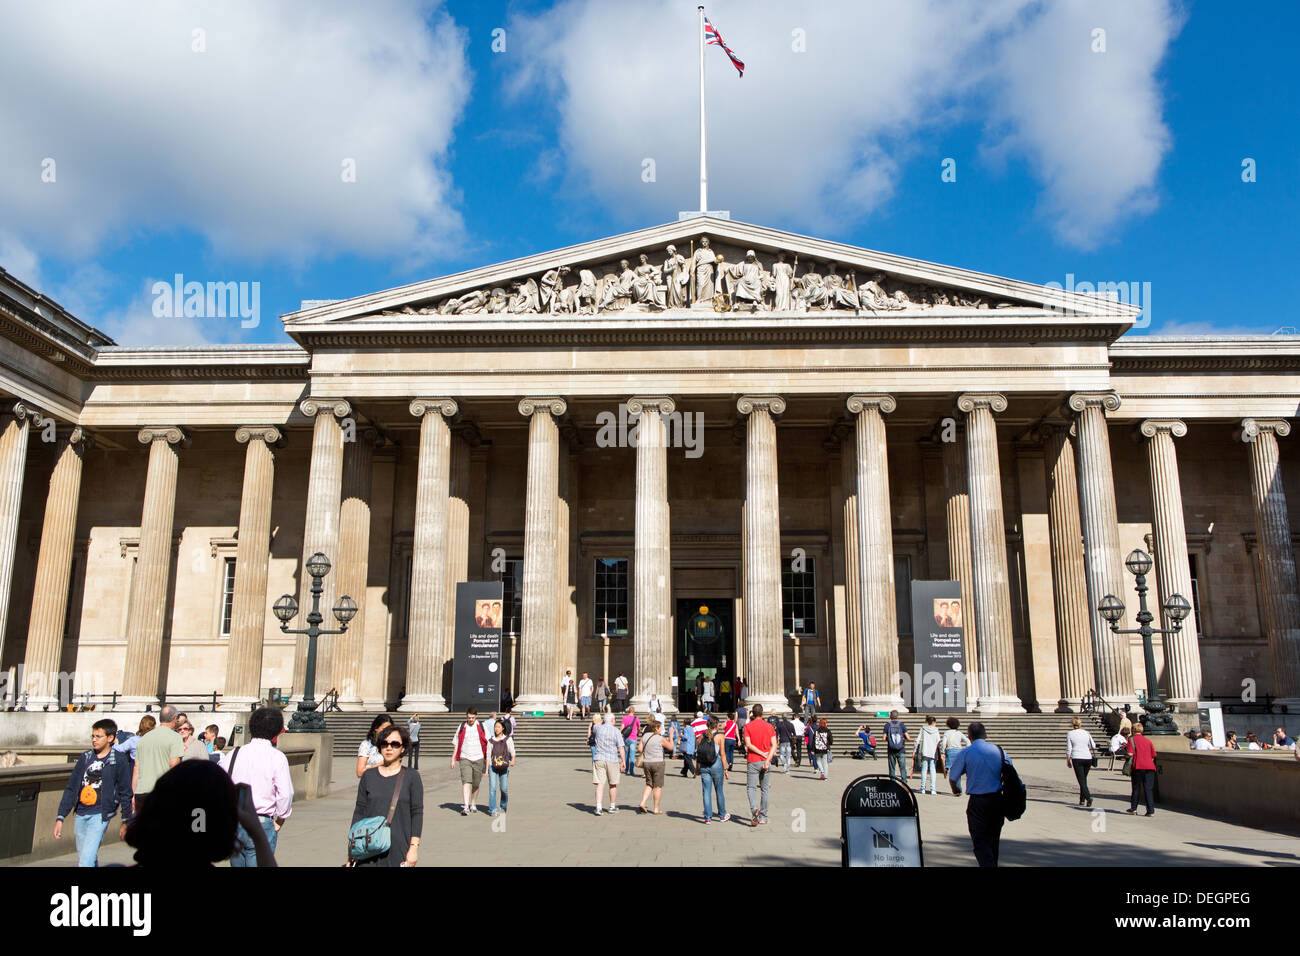 Le British Museum de Londres Banque D'Images